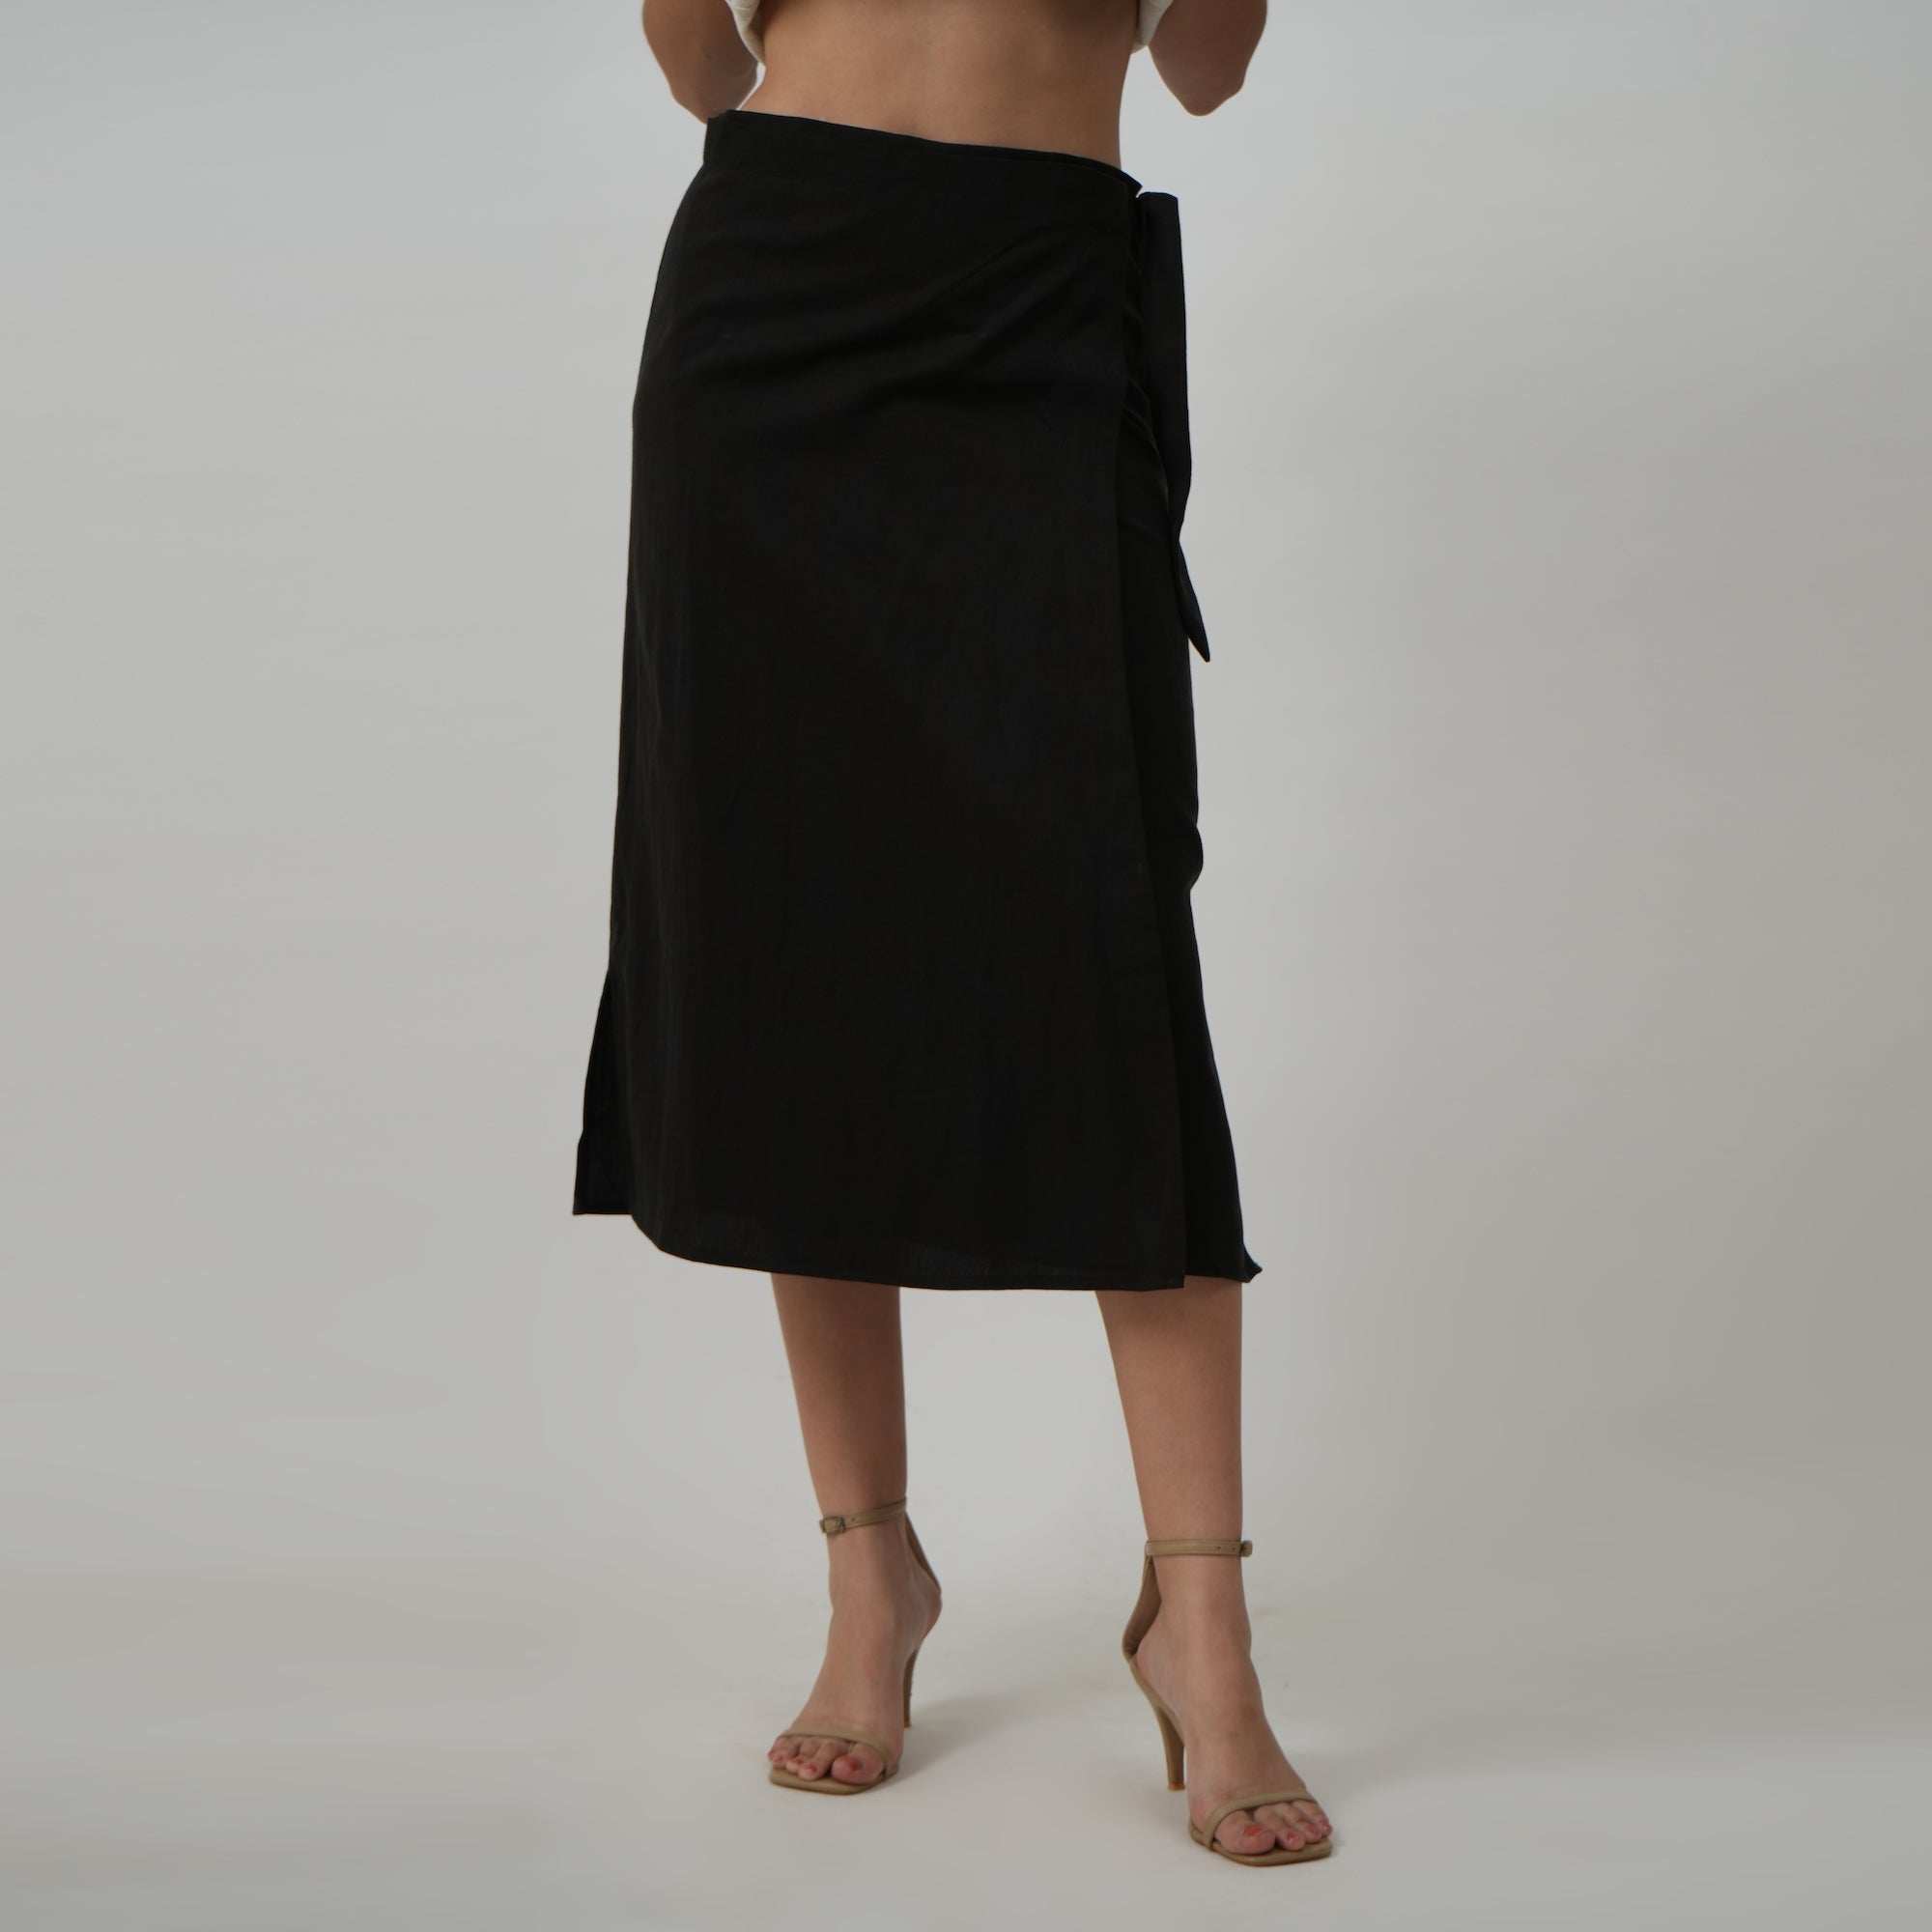 Wrap Skirt - Black